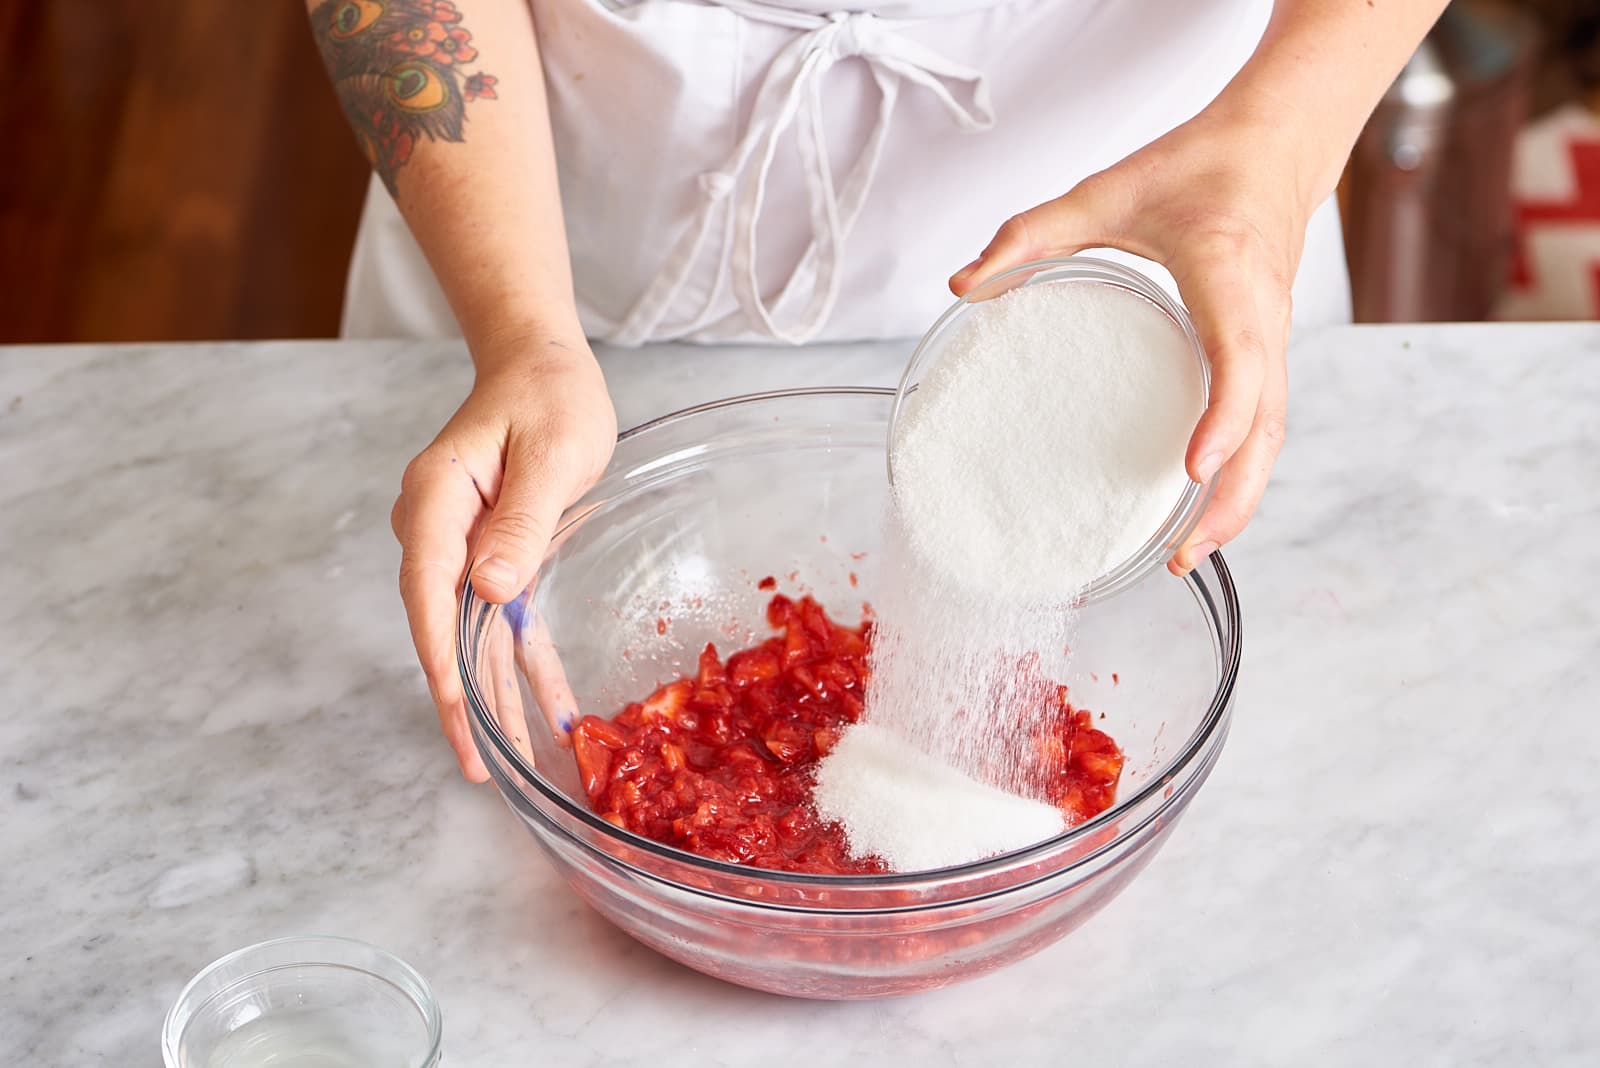 No-Cook Strawberry Freezer Jam Recipe - TidyMom®